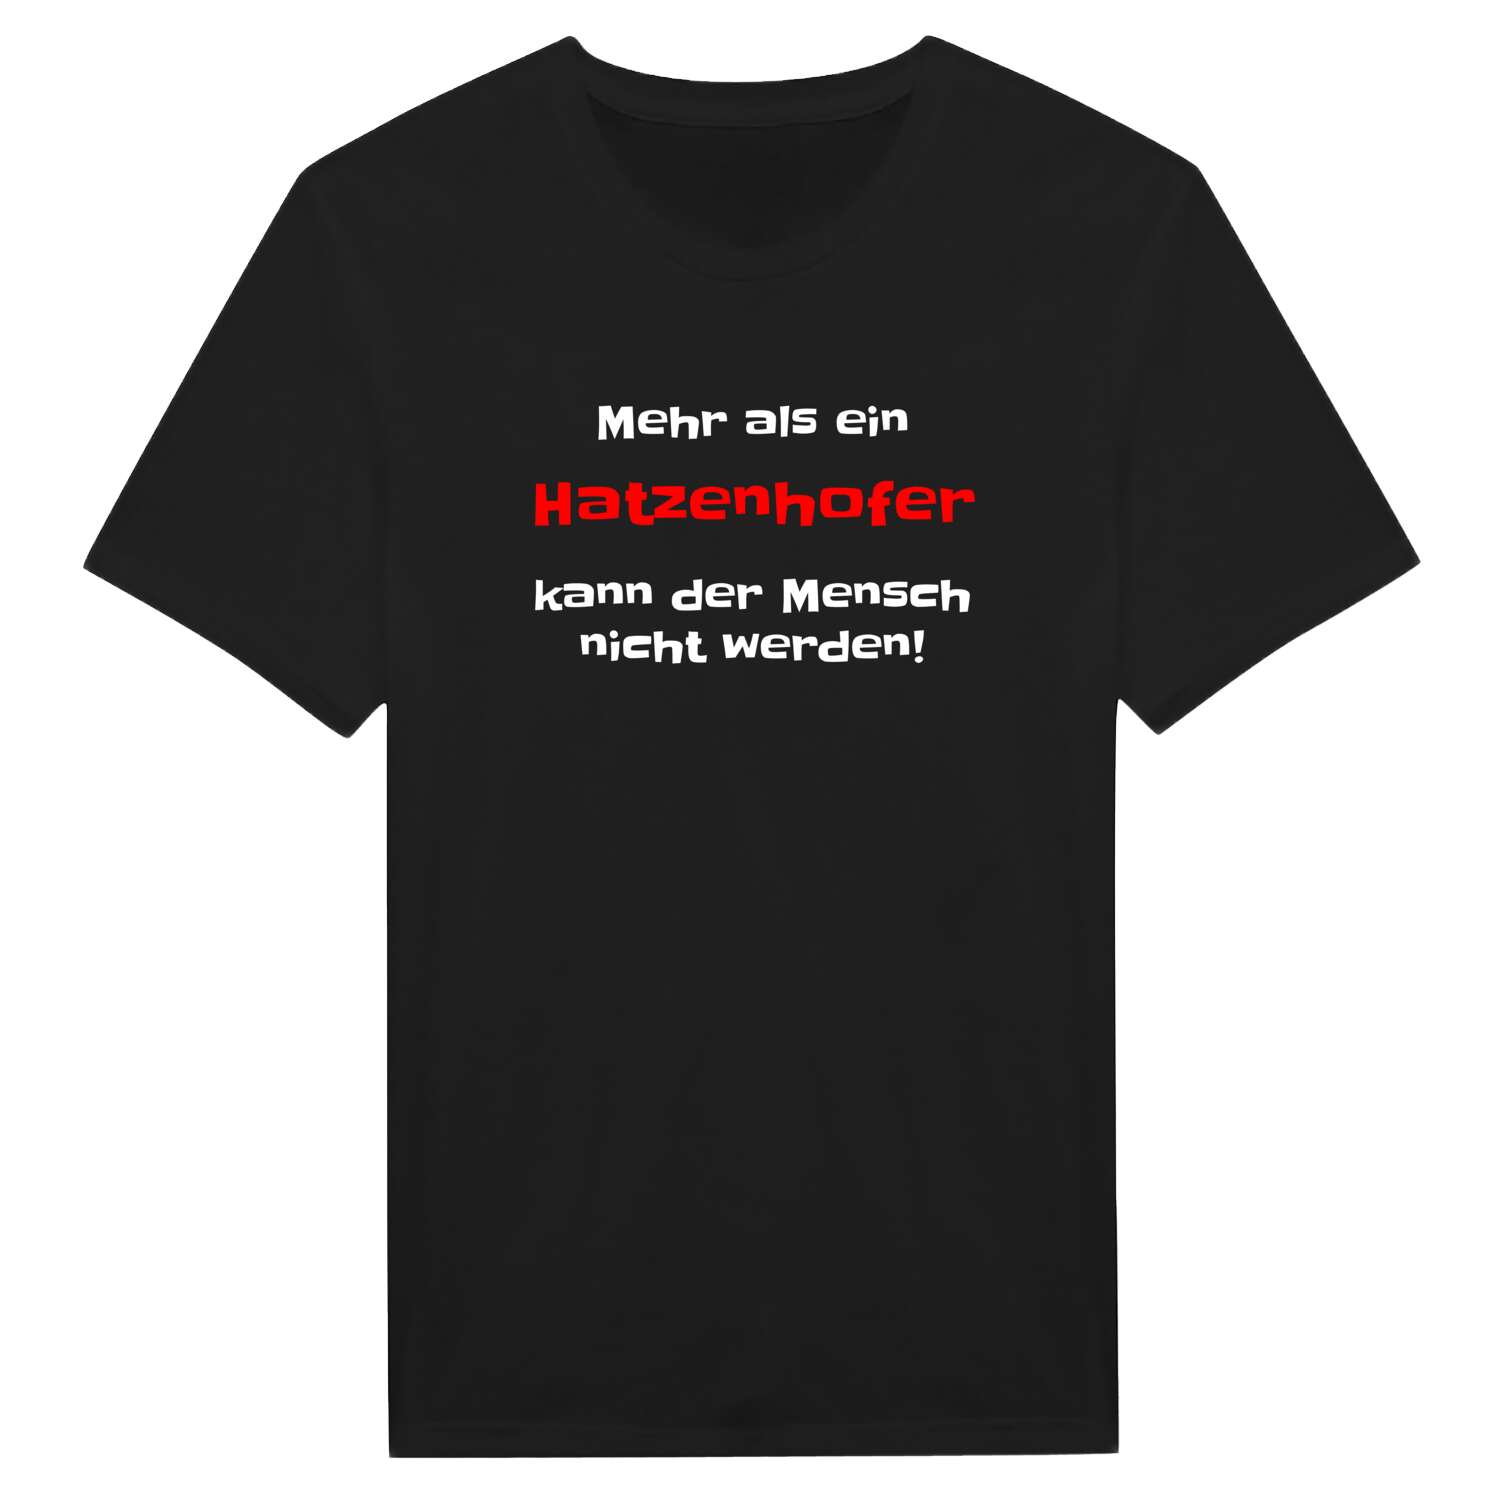 Hatzenhof T-Shirt »Mehr als ein«